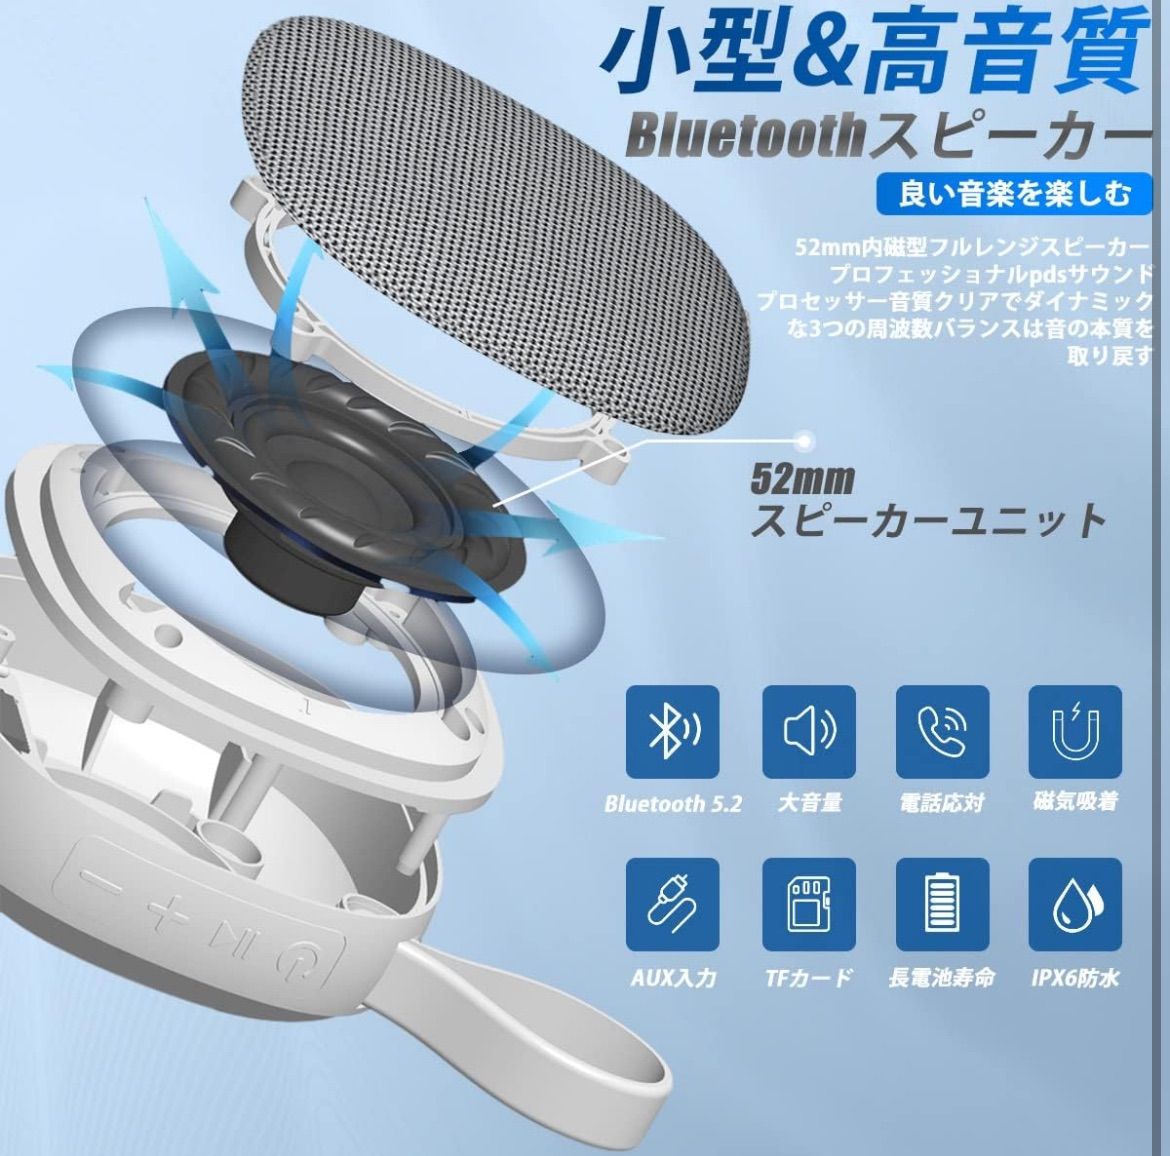 Uandear Bluetoothスピーカー IPX67防水 | ブルートゥーススピーカー